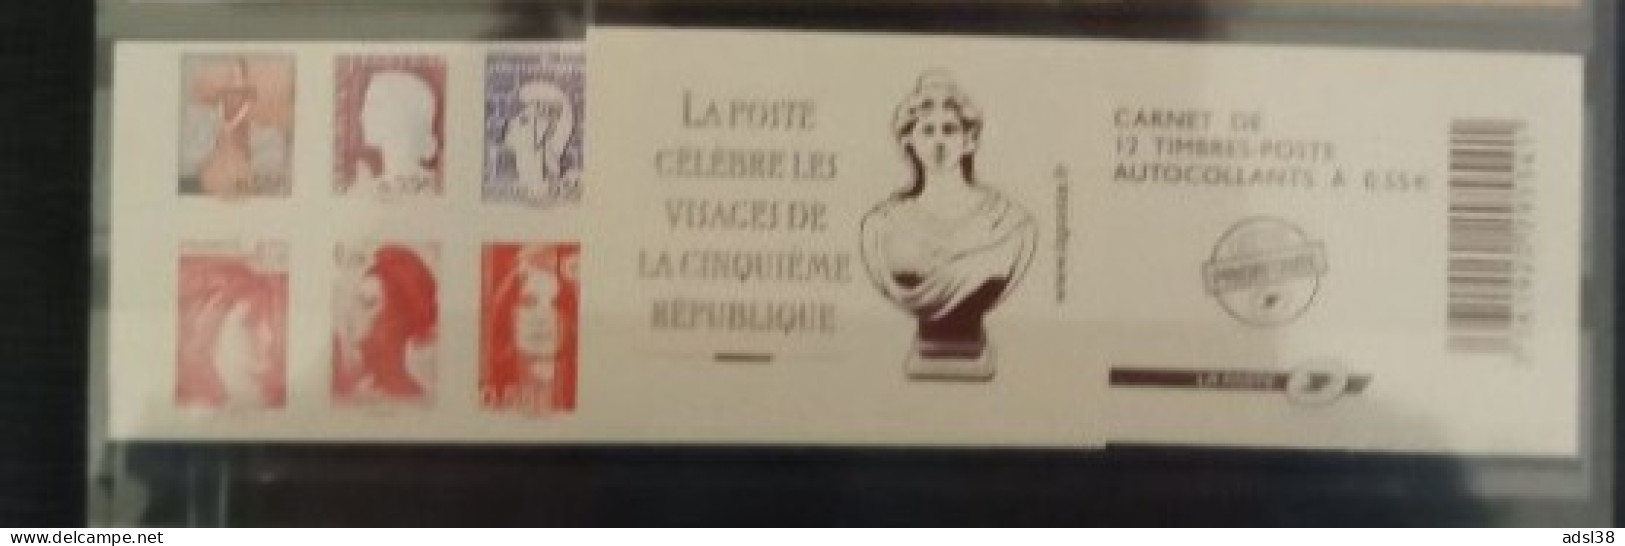 France - Carnet Visages Vème République - 1518 - Commemoratives